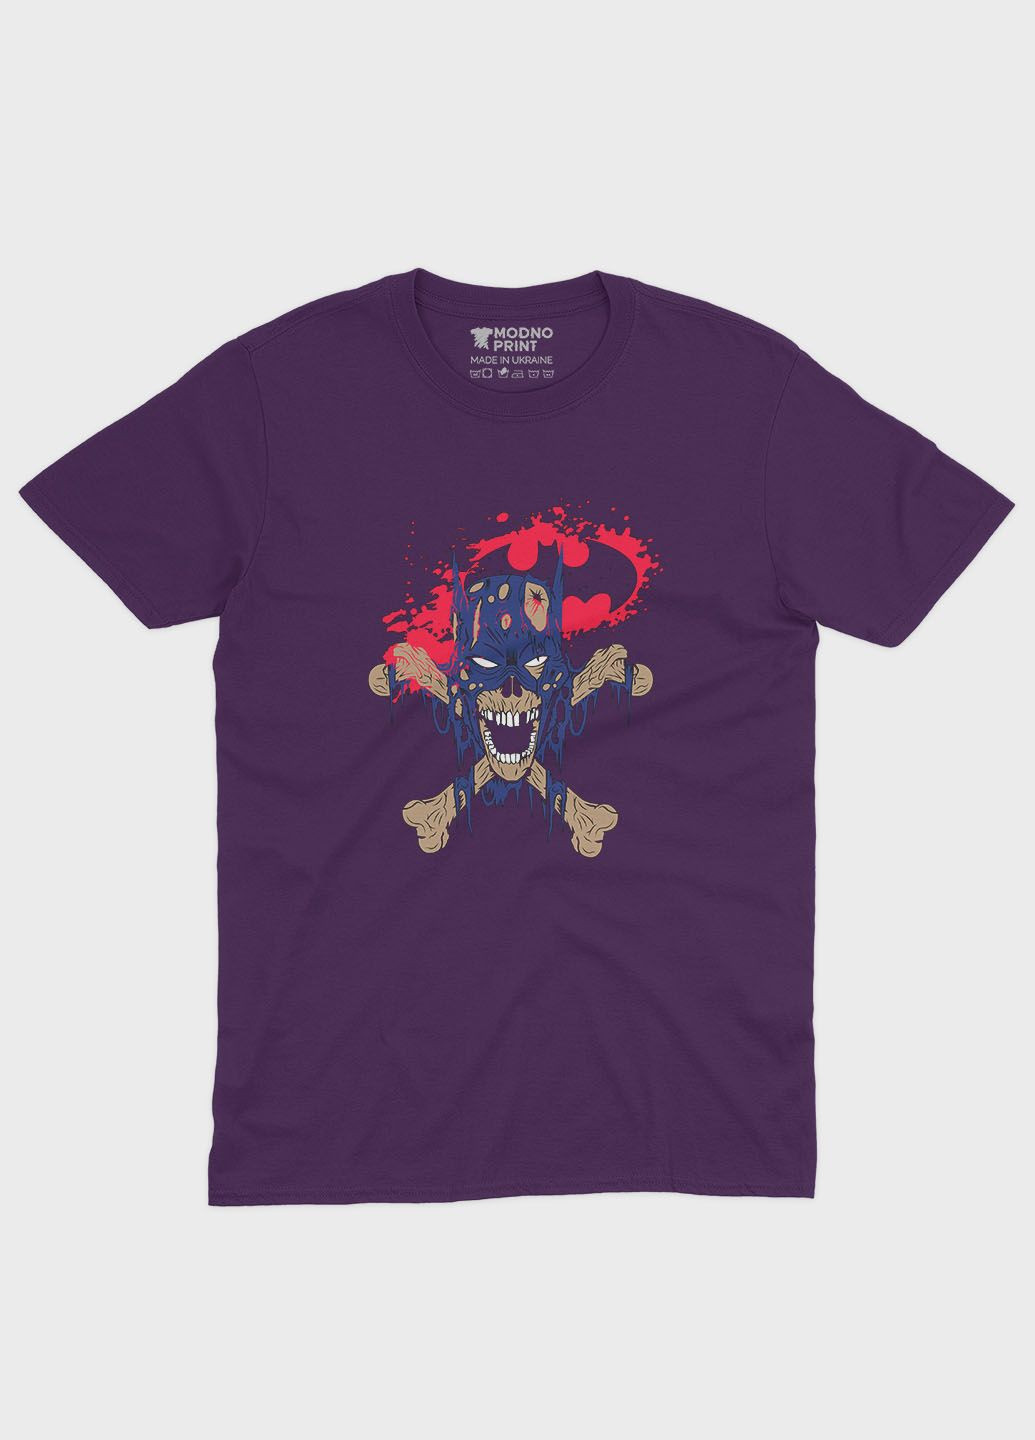 Фіолетова демісезонна футболка для хлопчика з принтом супергероя - бетмен (ts001-1-dby-006-003-038-b) Modno